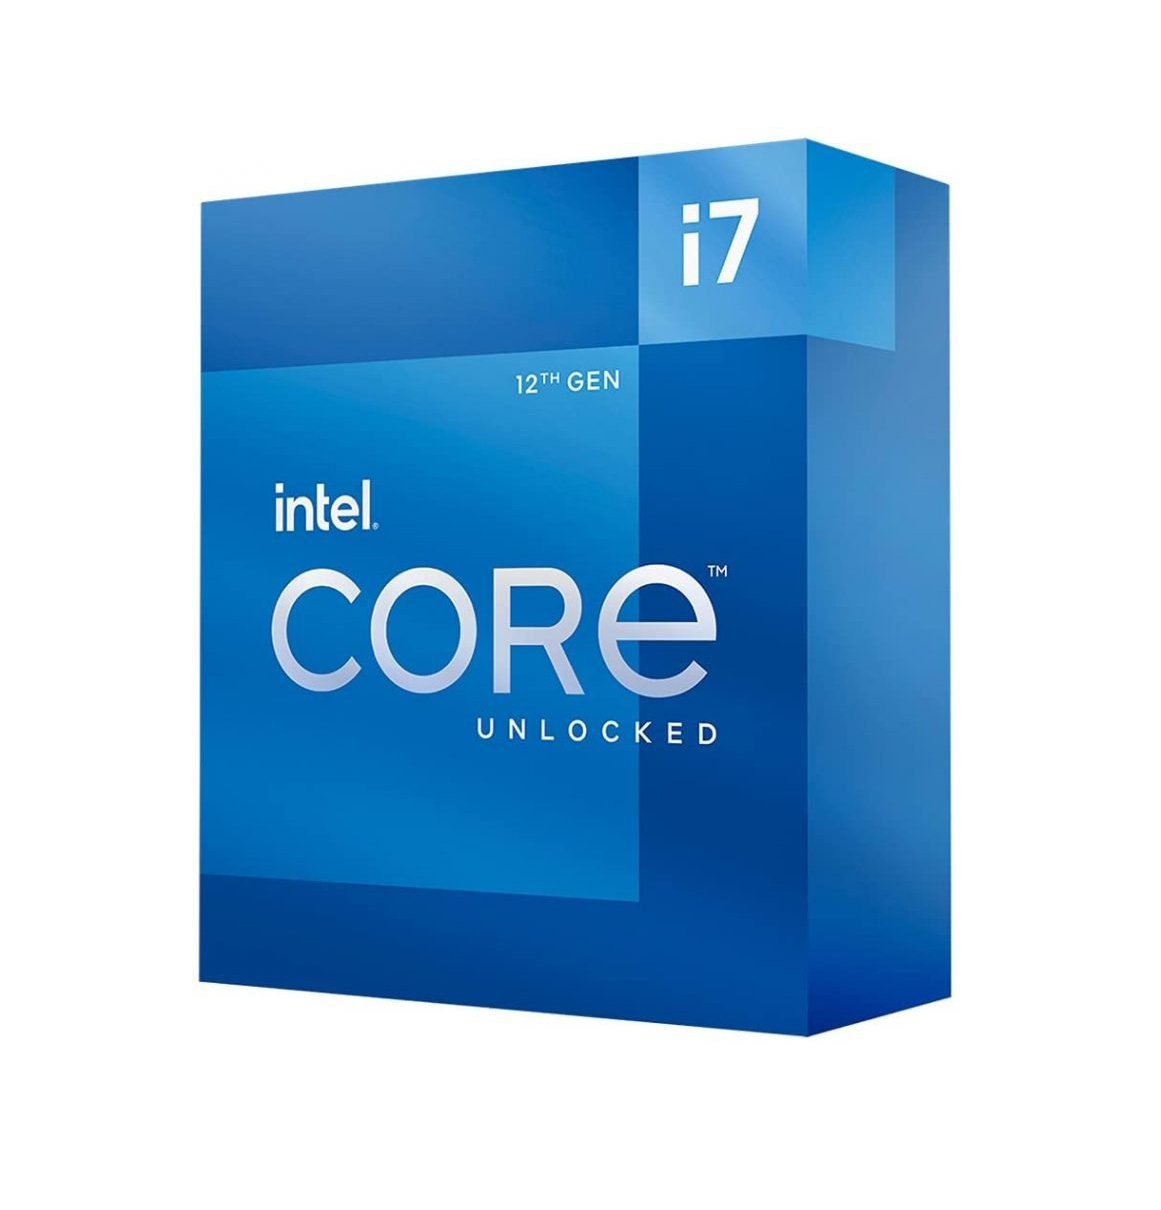 CPU Intel Core i7-12700 (2.1GHz up to 4.9GHz, 12 nhân 20 luồng, 25MB Cache, LGA 1700) - NEW FullBox Chính hãng, Bảo hành 36 tháng